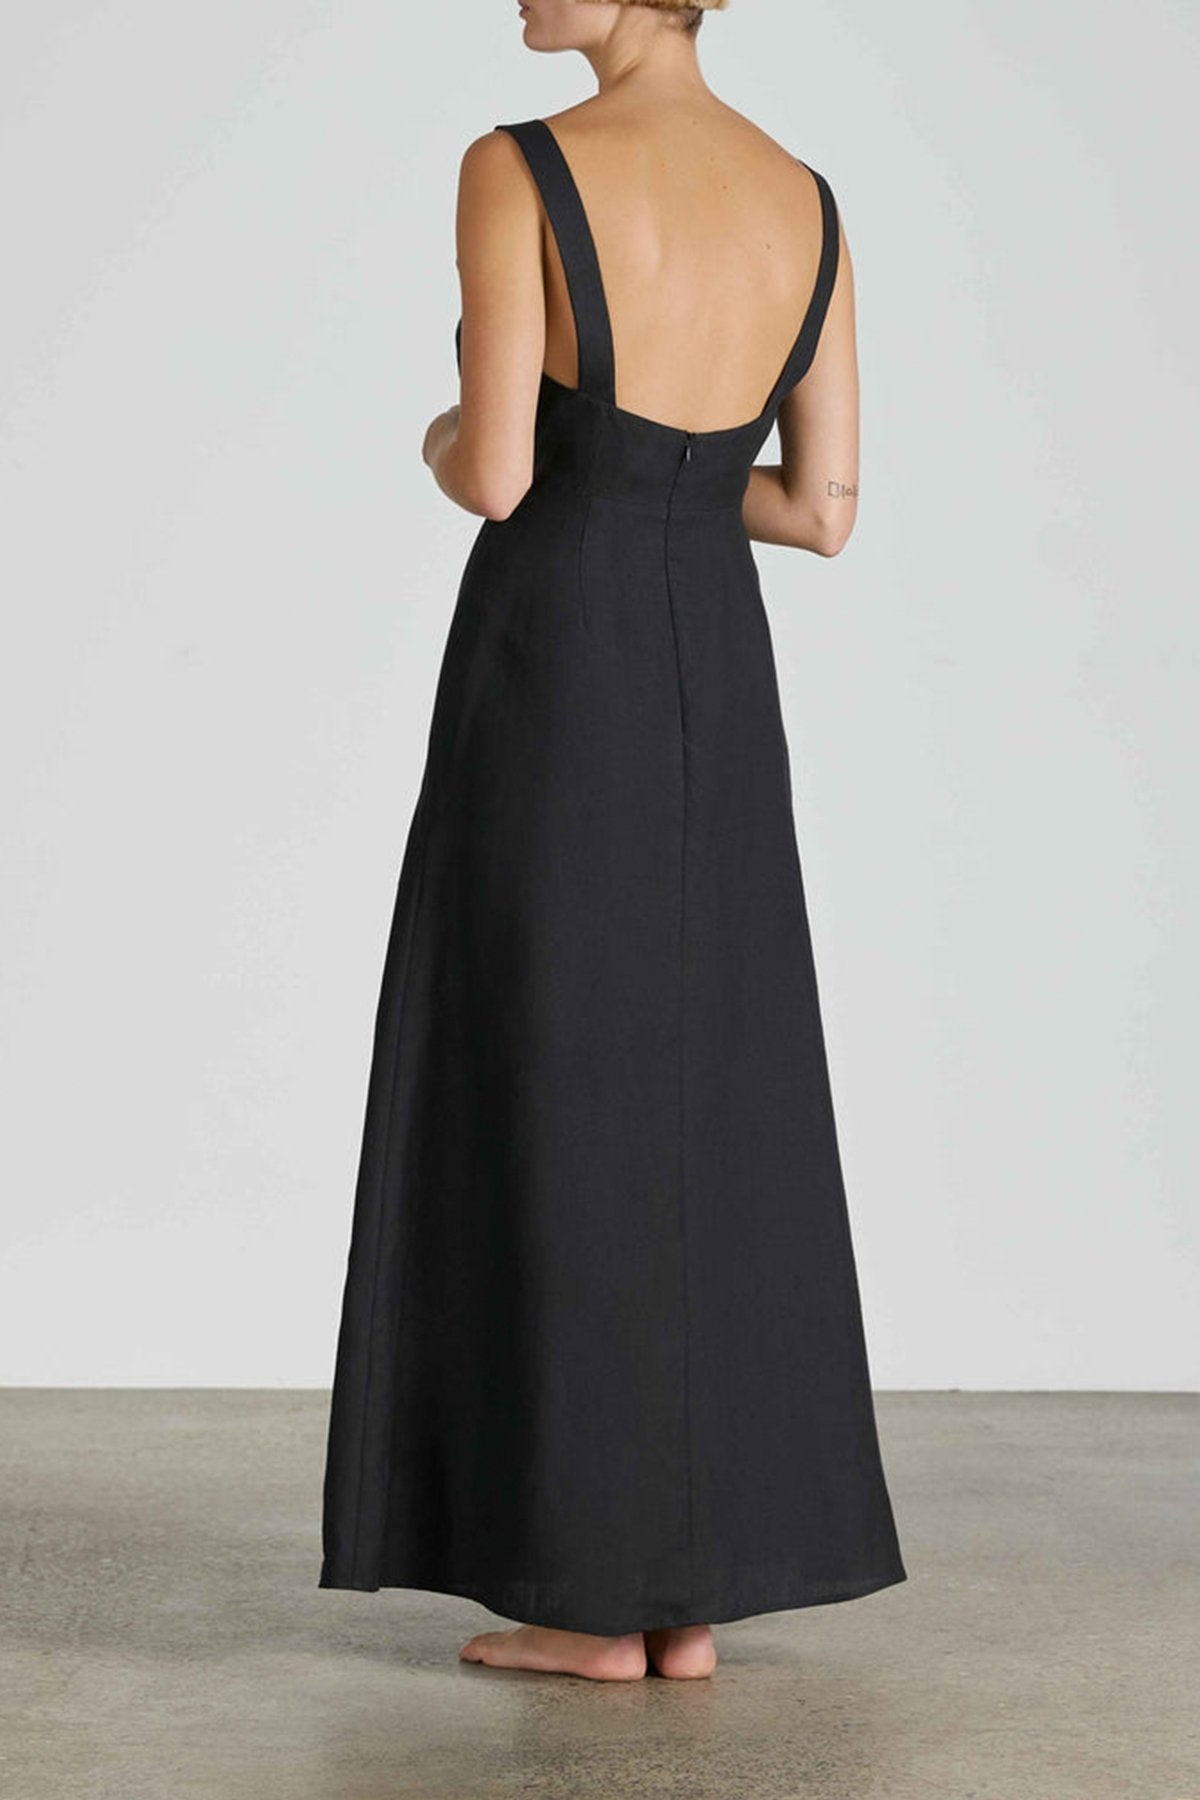 Tobago Organic Linen Dress in Black - shop-olivia.com